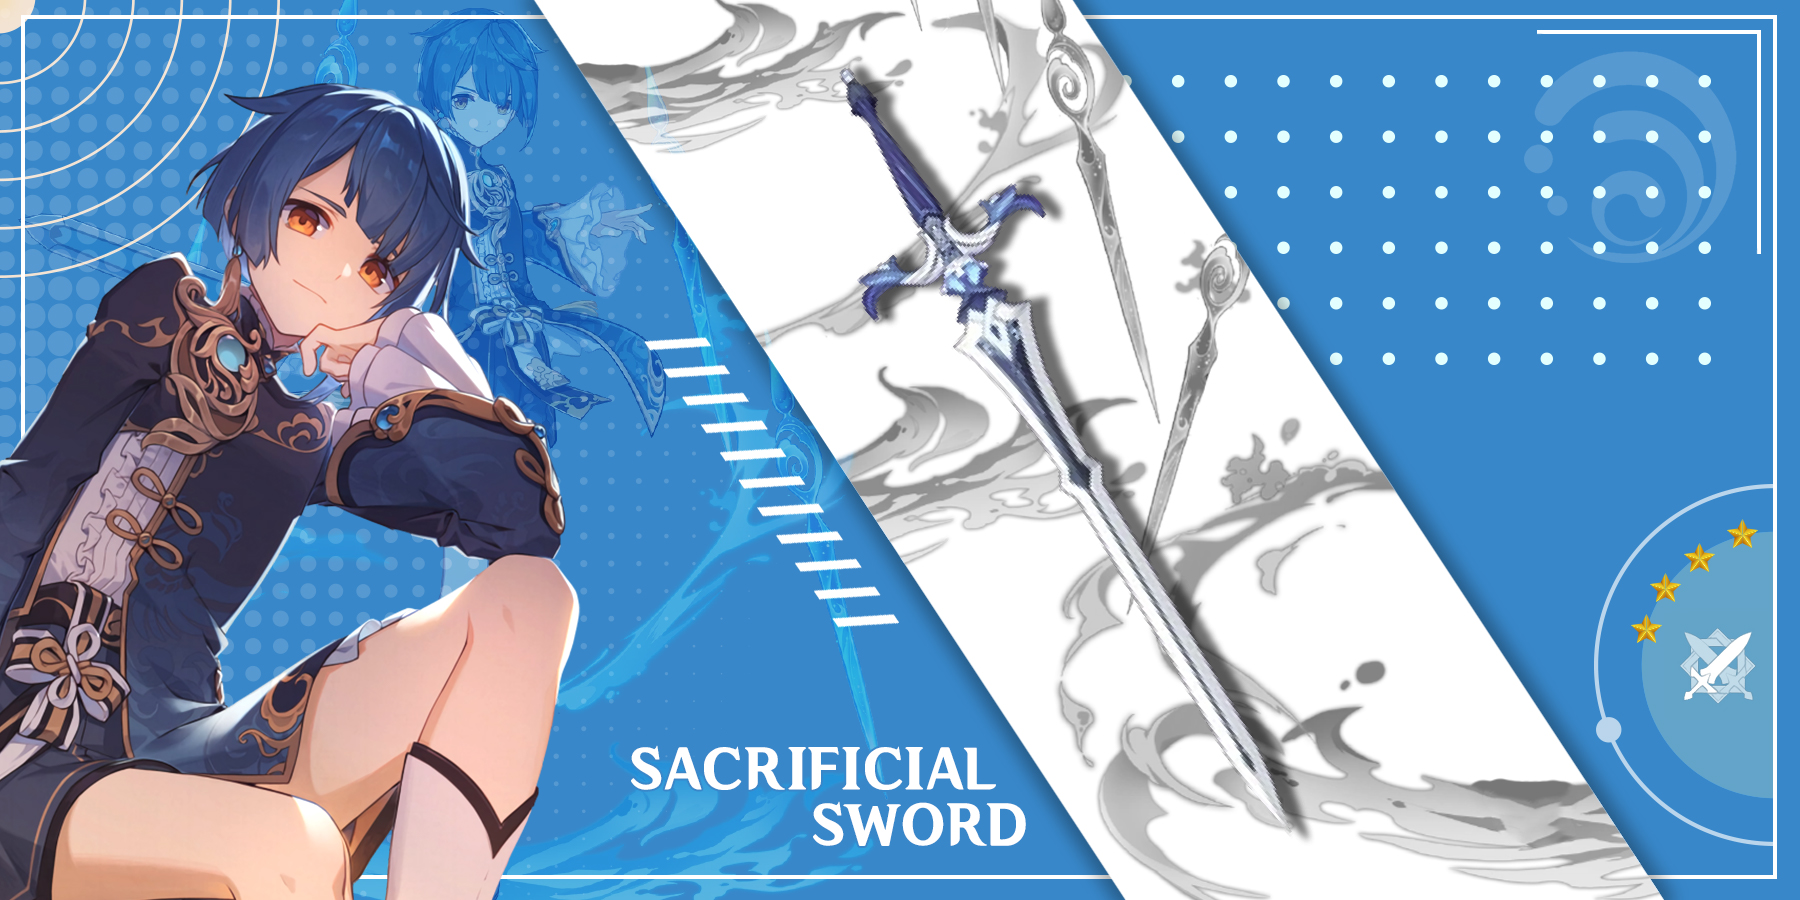 xingqiu-using-sacrificial-sword-in-genshin-impact